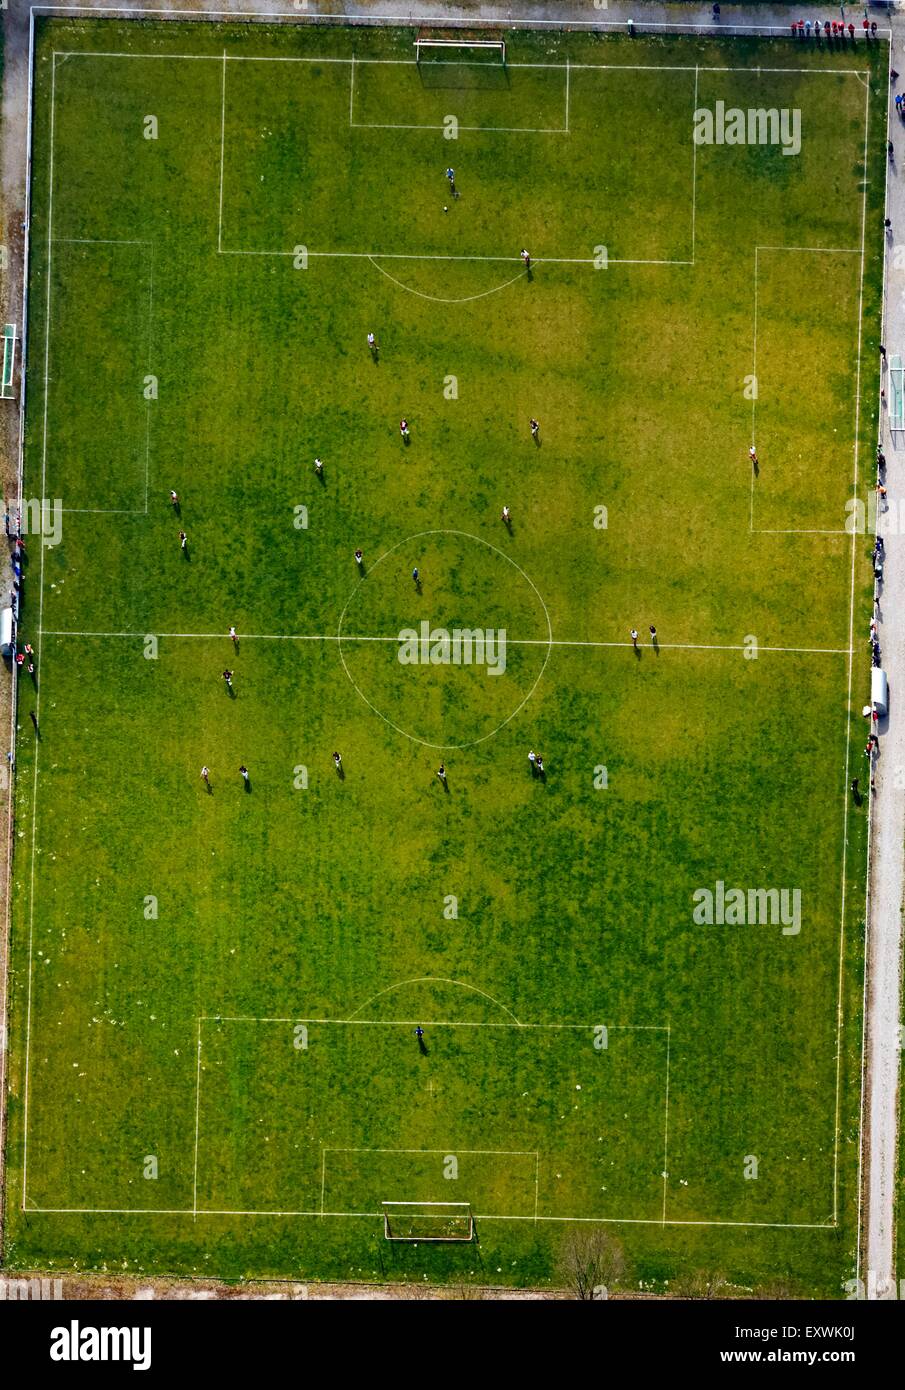 Fußballspiel von oben Stockfoto